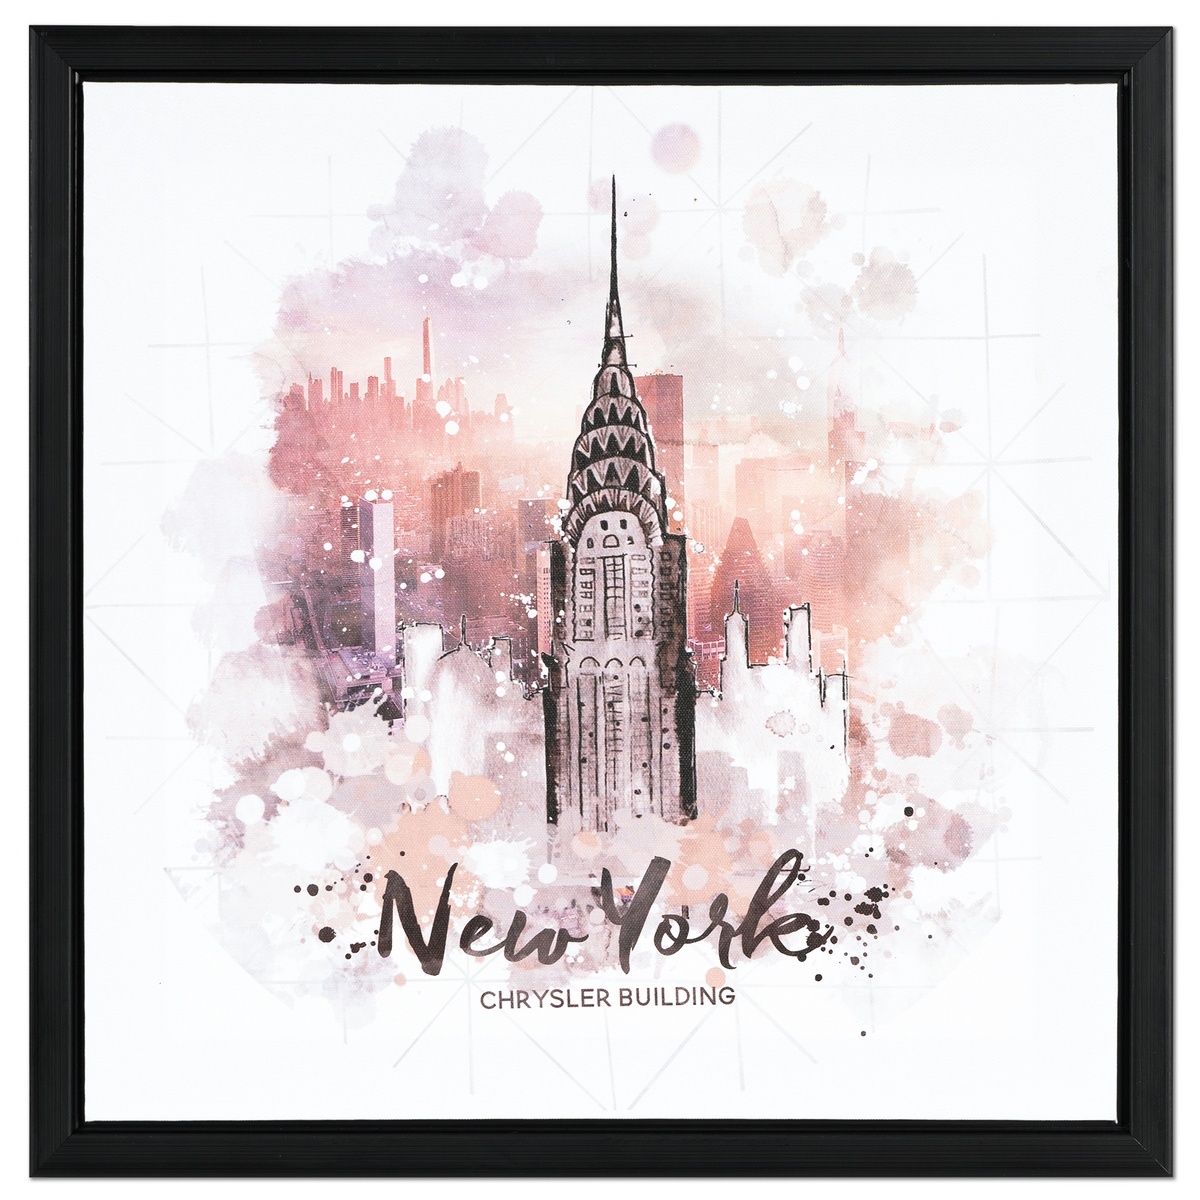 Plátěný obraz v rámečku NewYork, 40 x 40 x 2,5 cm